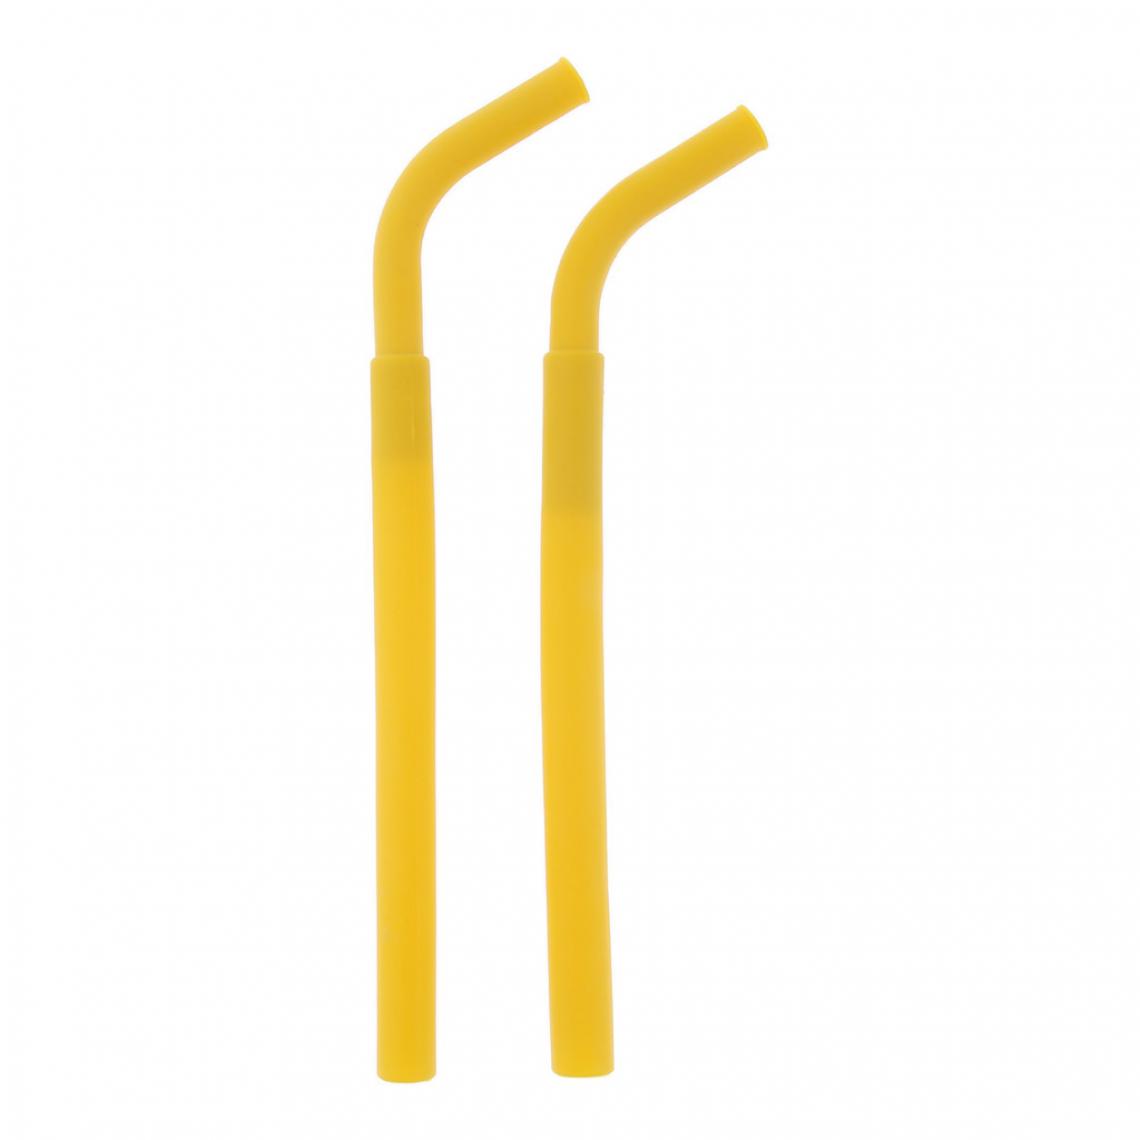 marque generique - 2pcs pailles droites flexibles réutilisables en silicone jaune foncé - Kitchenette